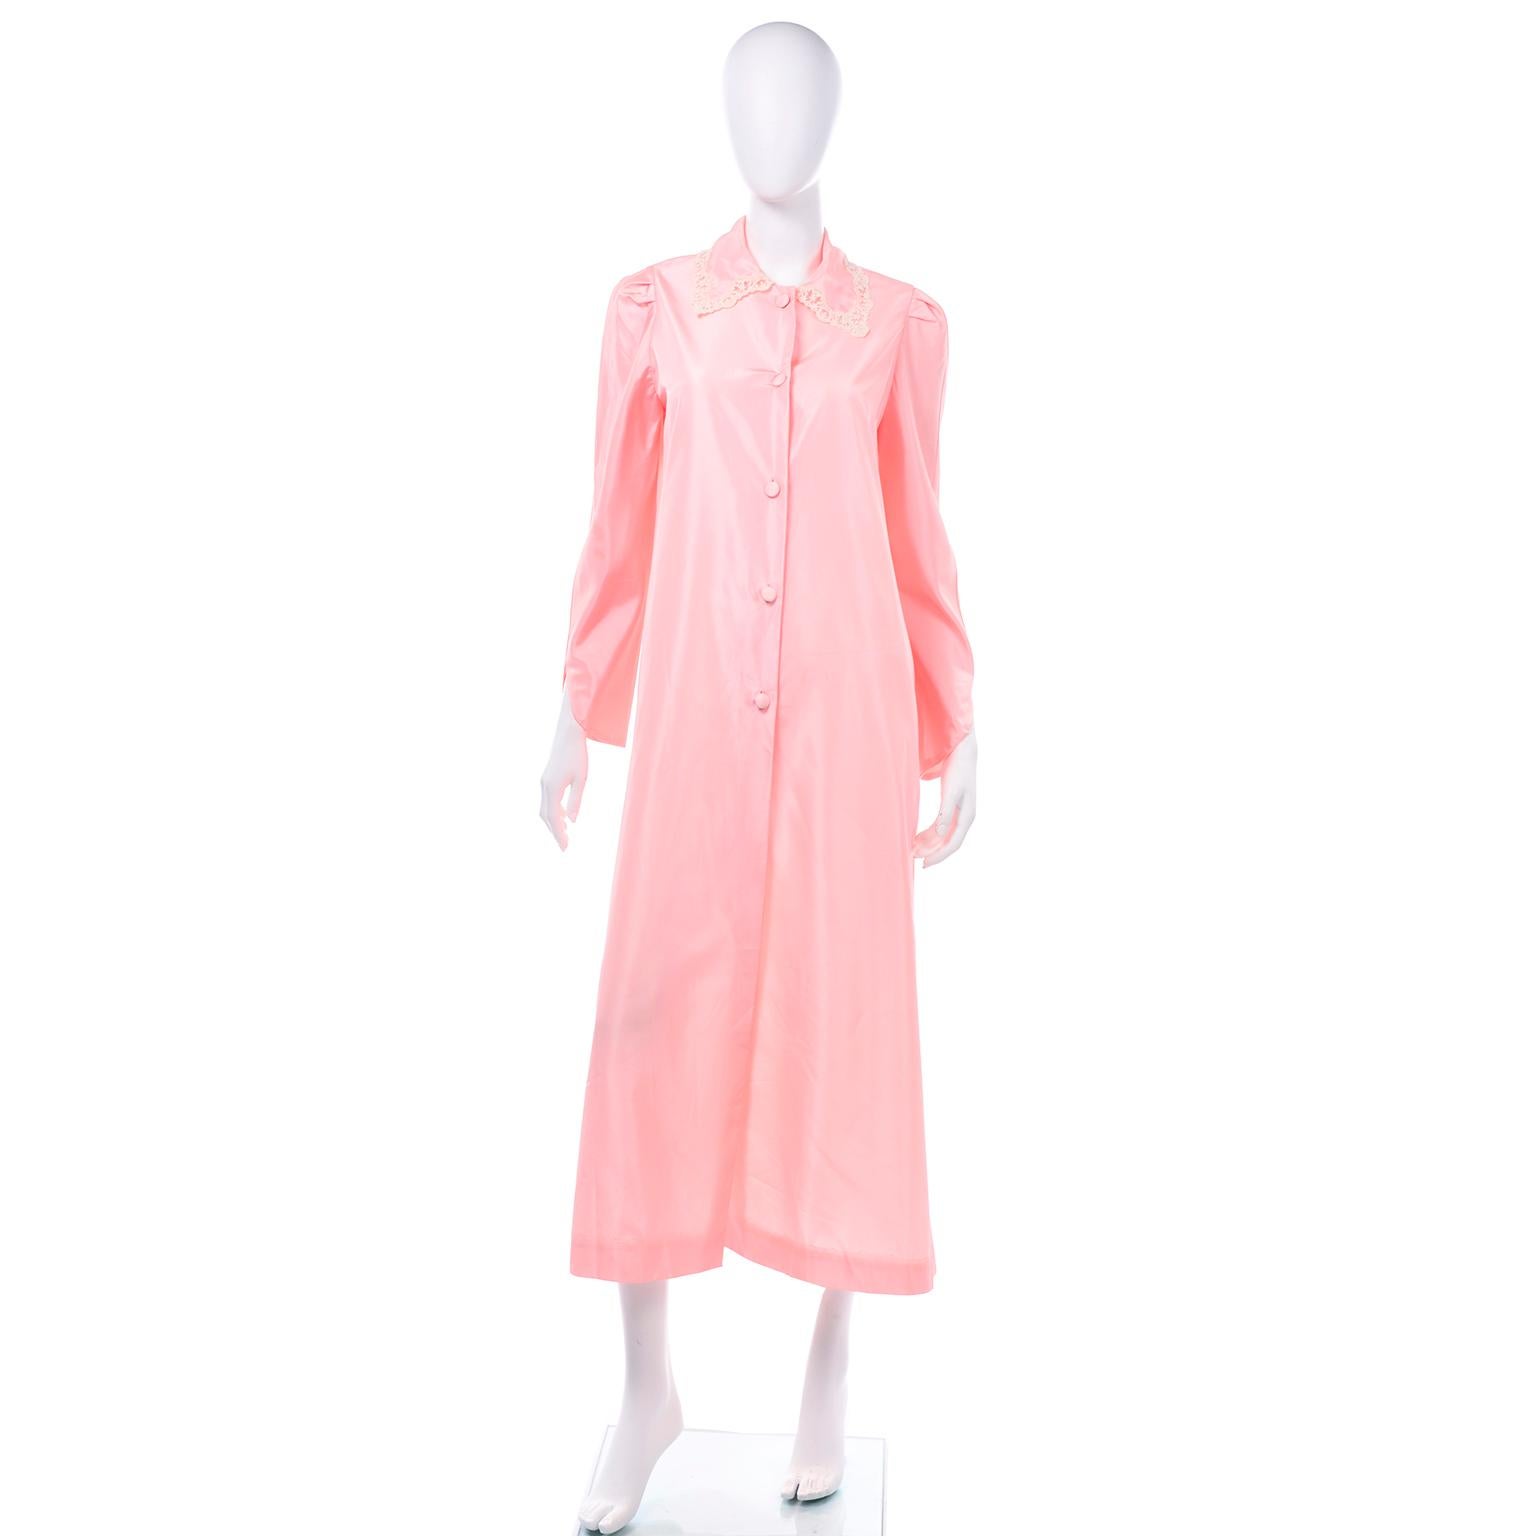 Dies ist eine wirklich schöne Vintage-Robe von Chloé in einem hübschen rosa Taft mit Spitzenbesatz. Die Ärmel sind an der Manschette schräg geschnitten und der spitze Kragen ist mit zarter cremefarbener Spitze besetzt. Der Hausmantel ist recht lang